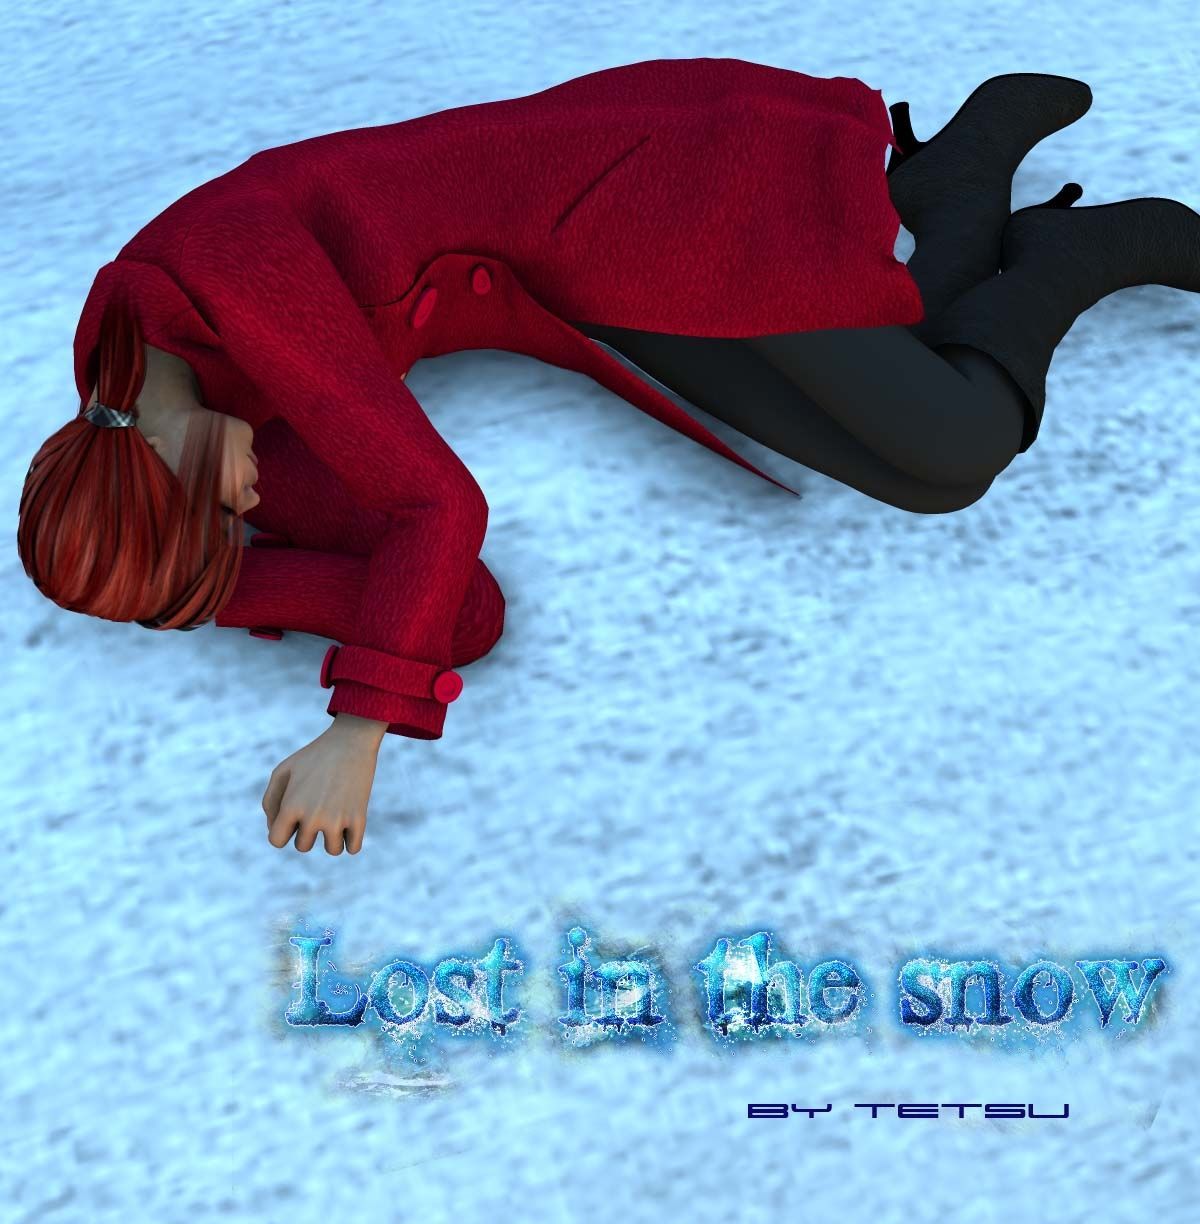 verloren in De sneeuw